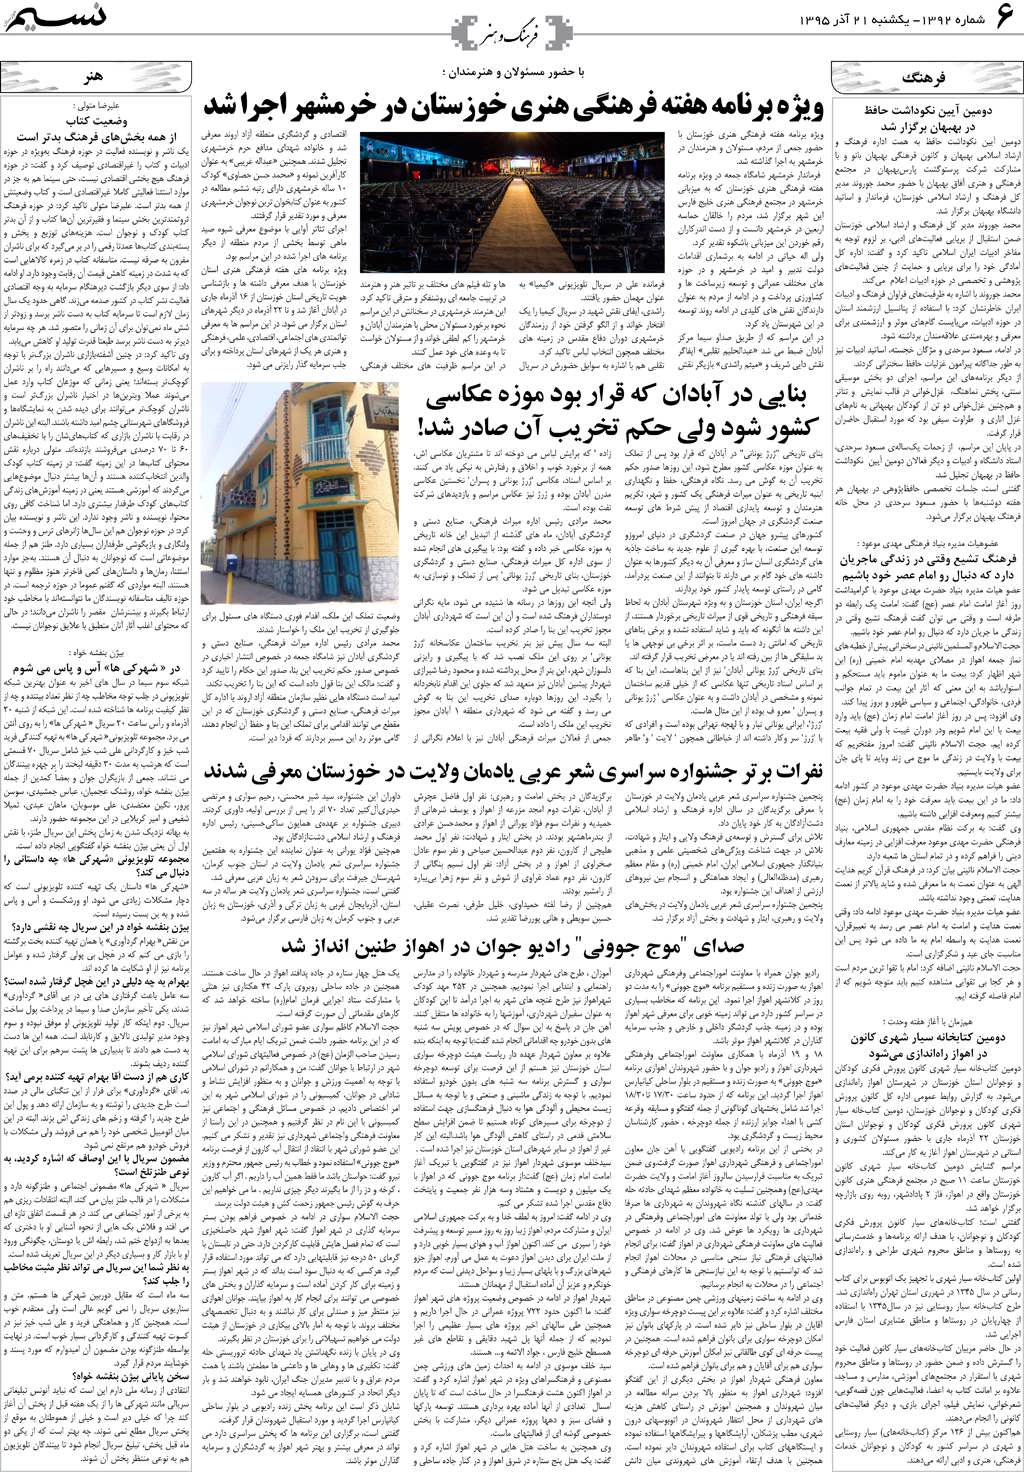 صفحه فرهنگ و هنر روزنامه نسیم شماره 1392